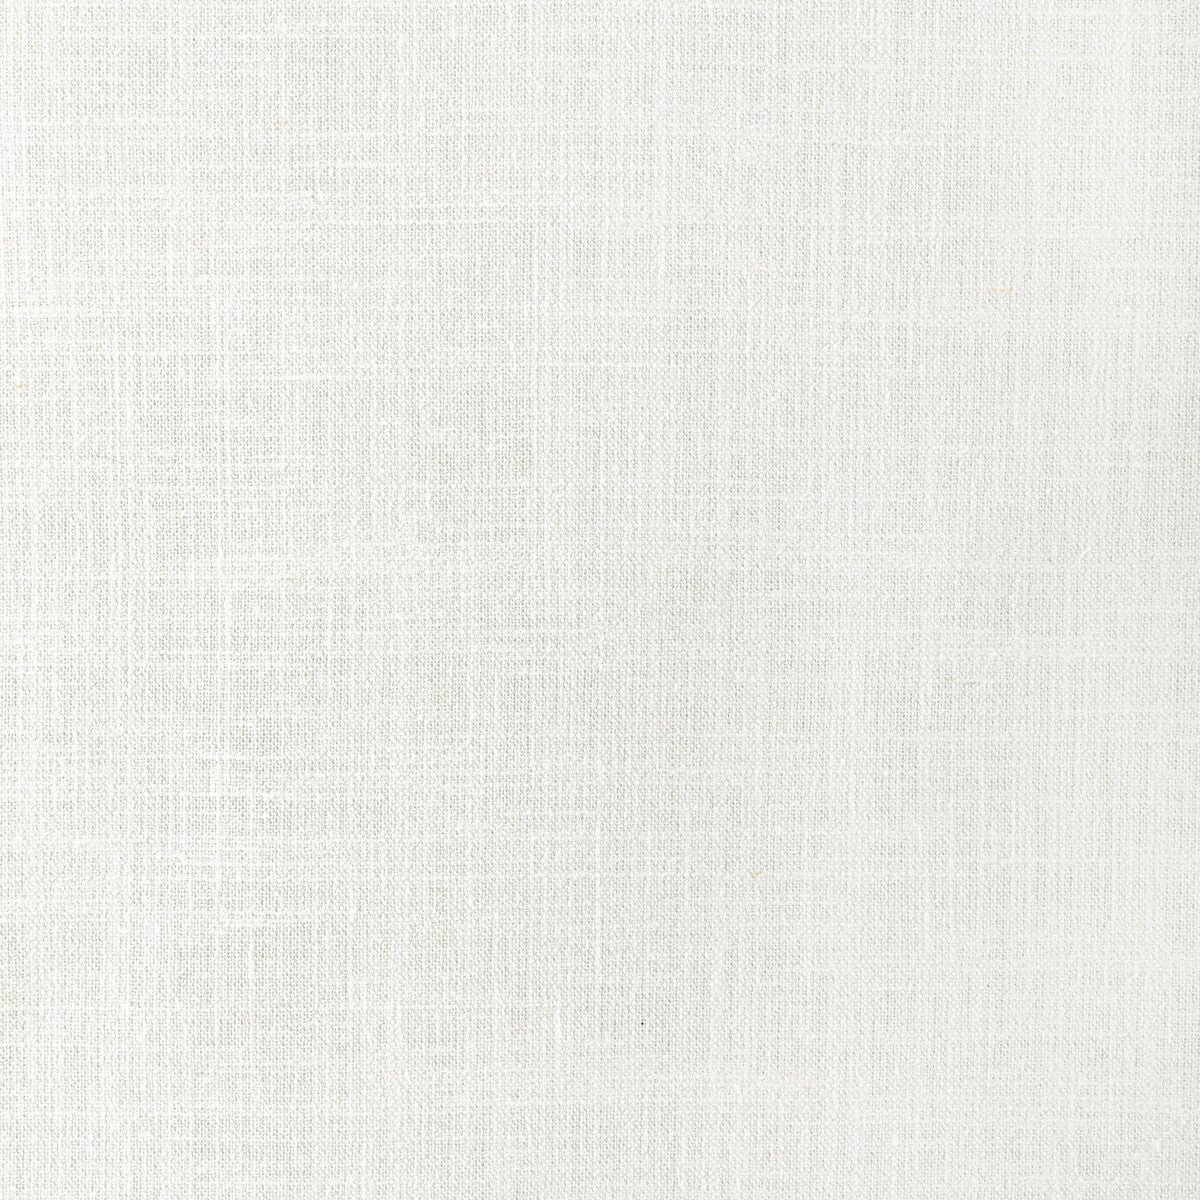 Kravet Basics fabric in 4932-1 color - pattern 4932.1.0 - by Kravet Basics